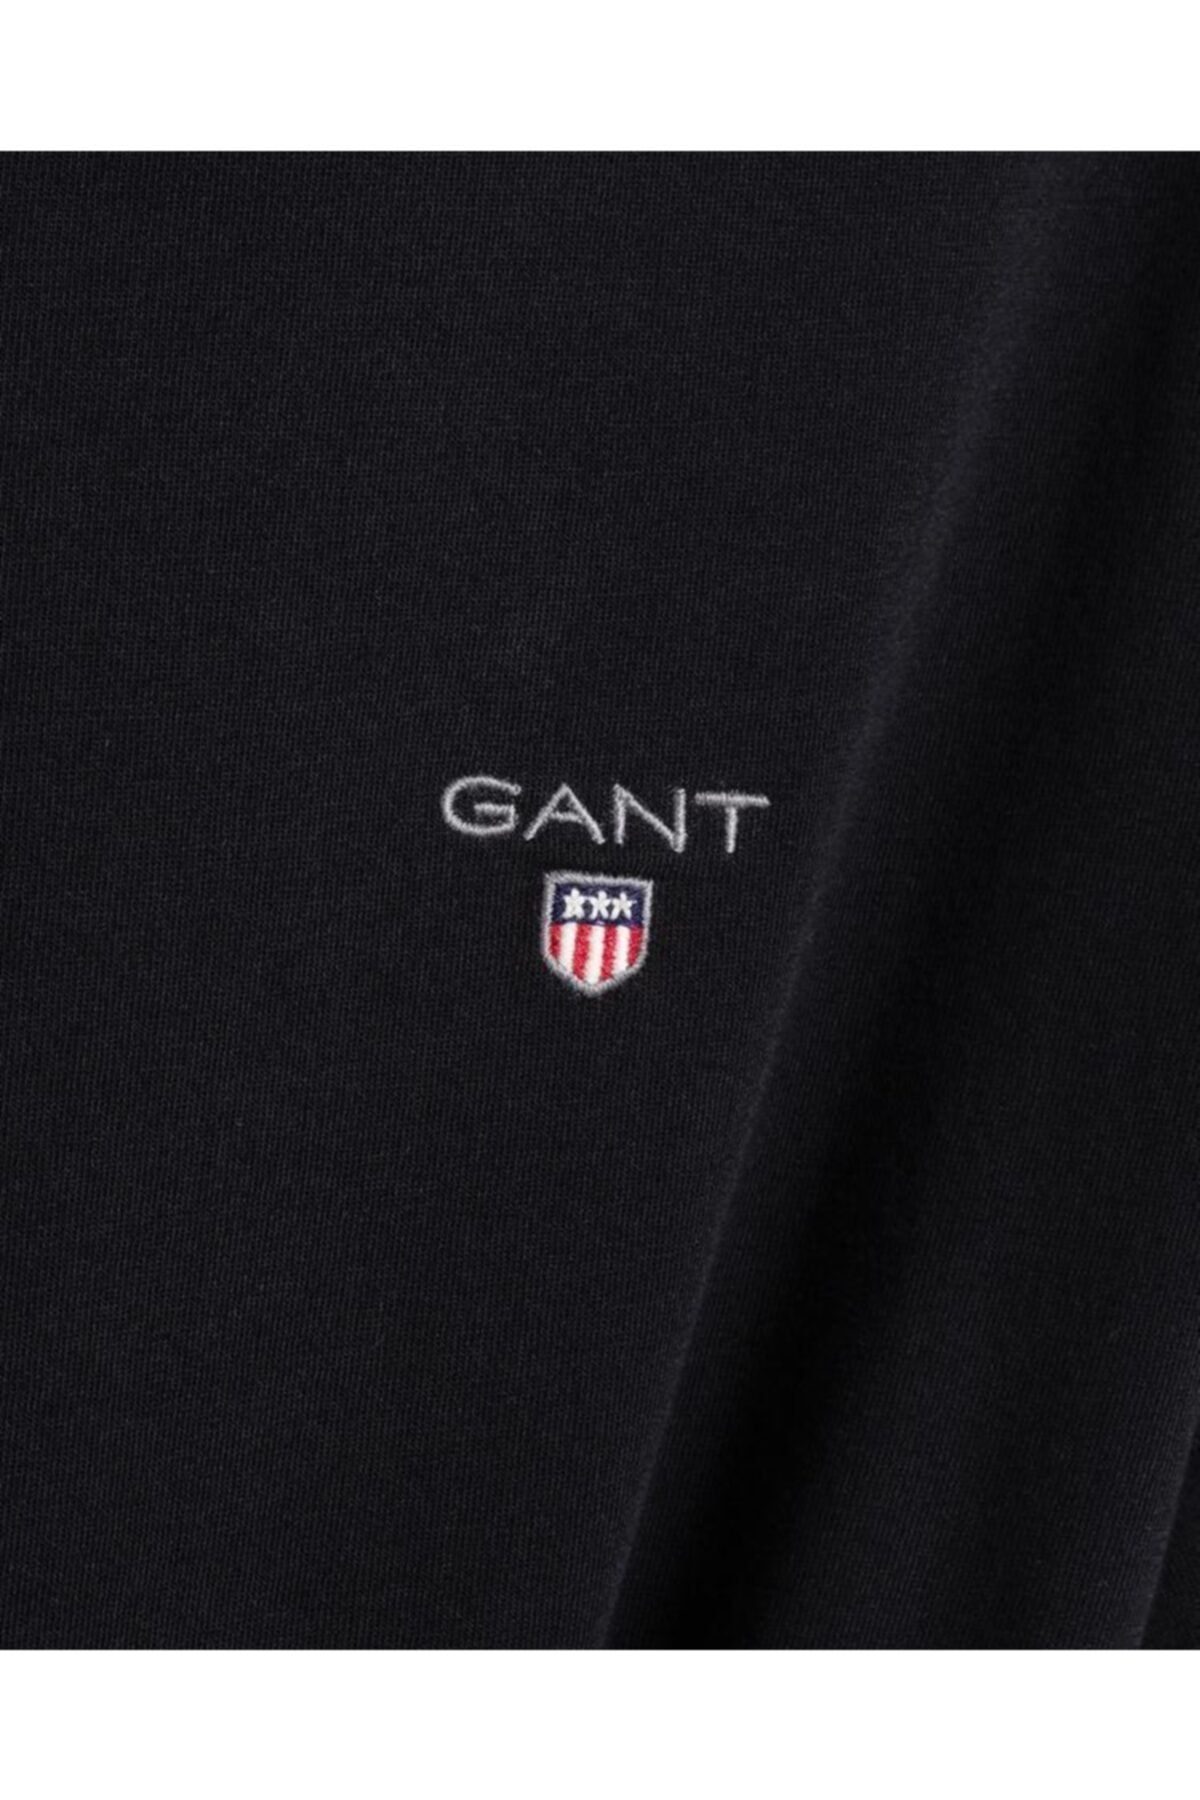 Gant Erkek Siyah Slim Fit V Yaka T-shirt 234104.5